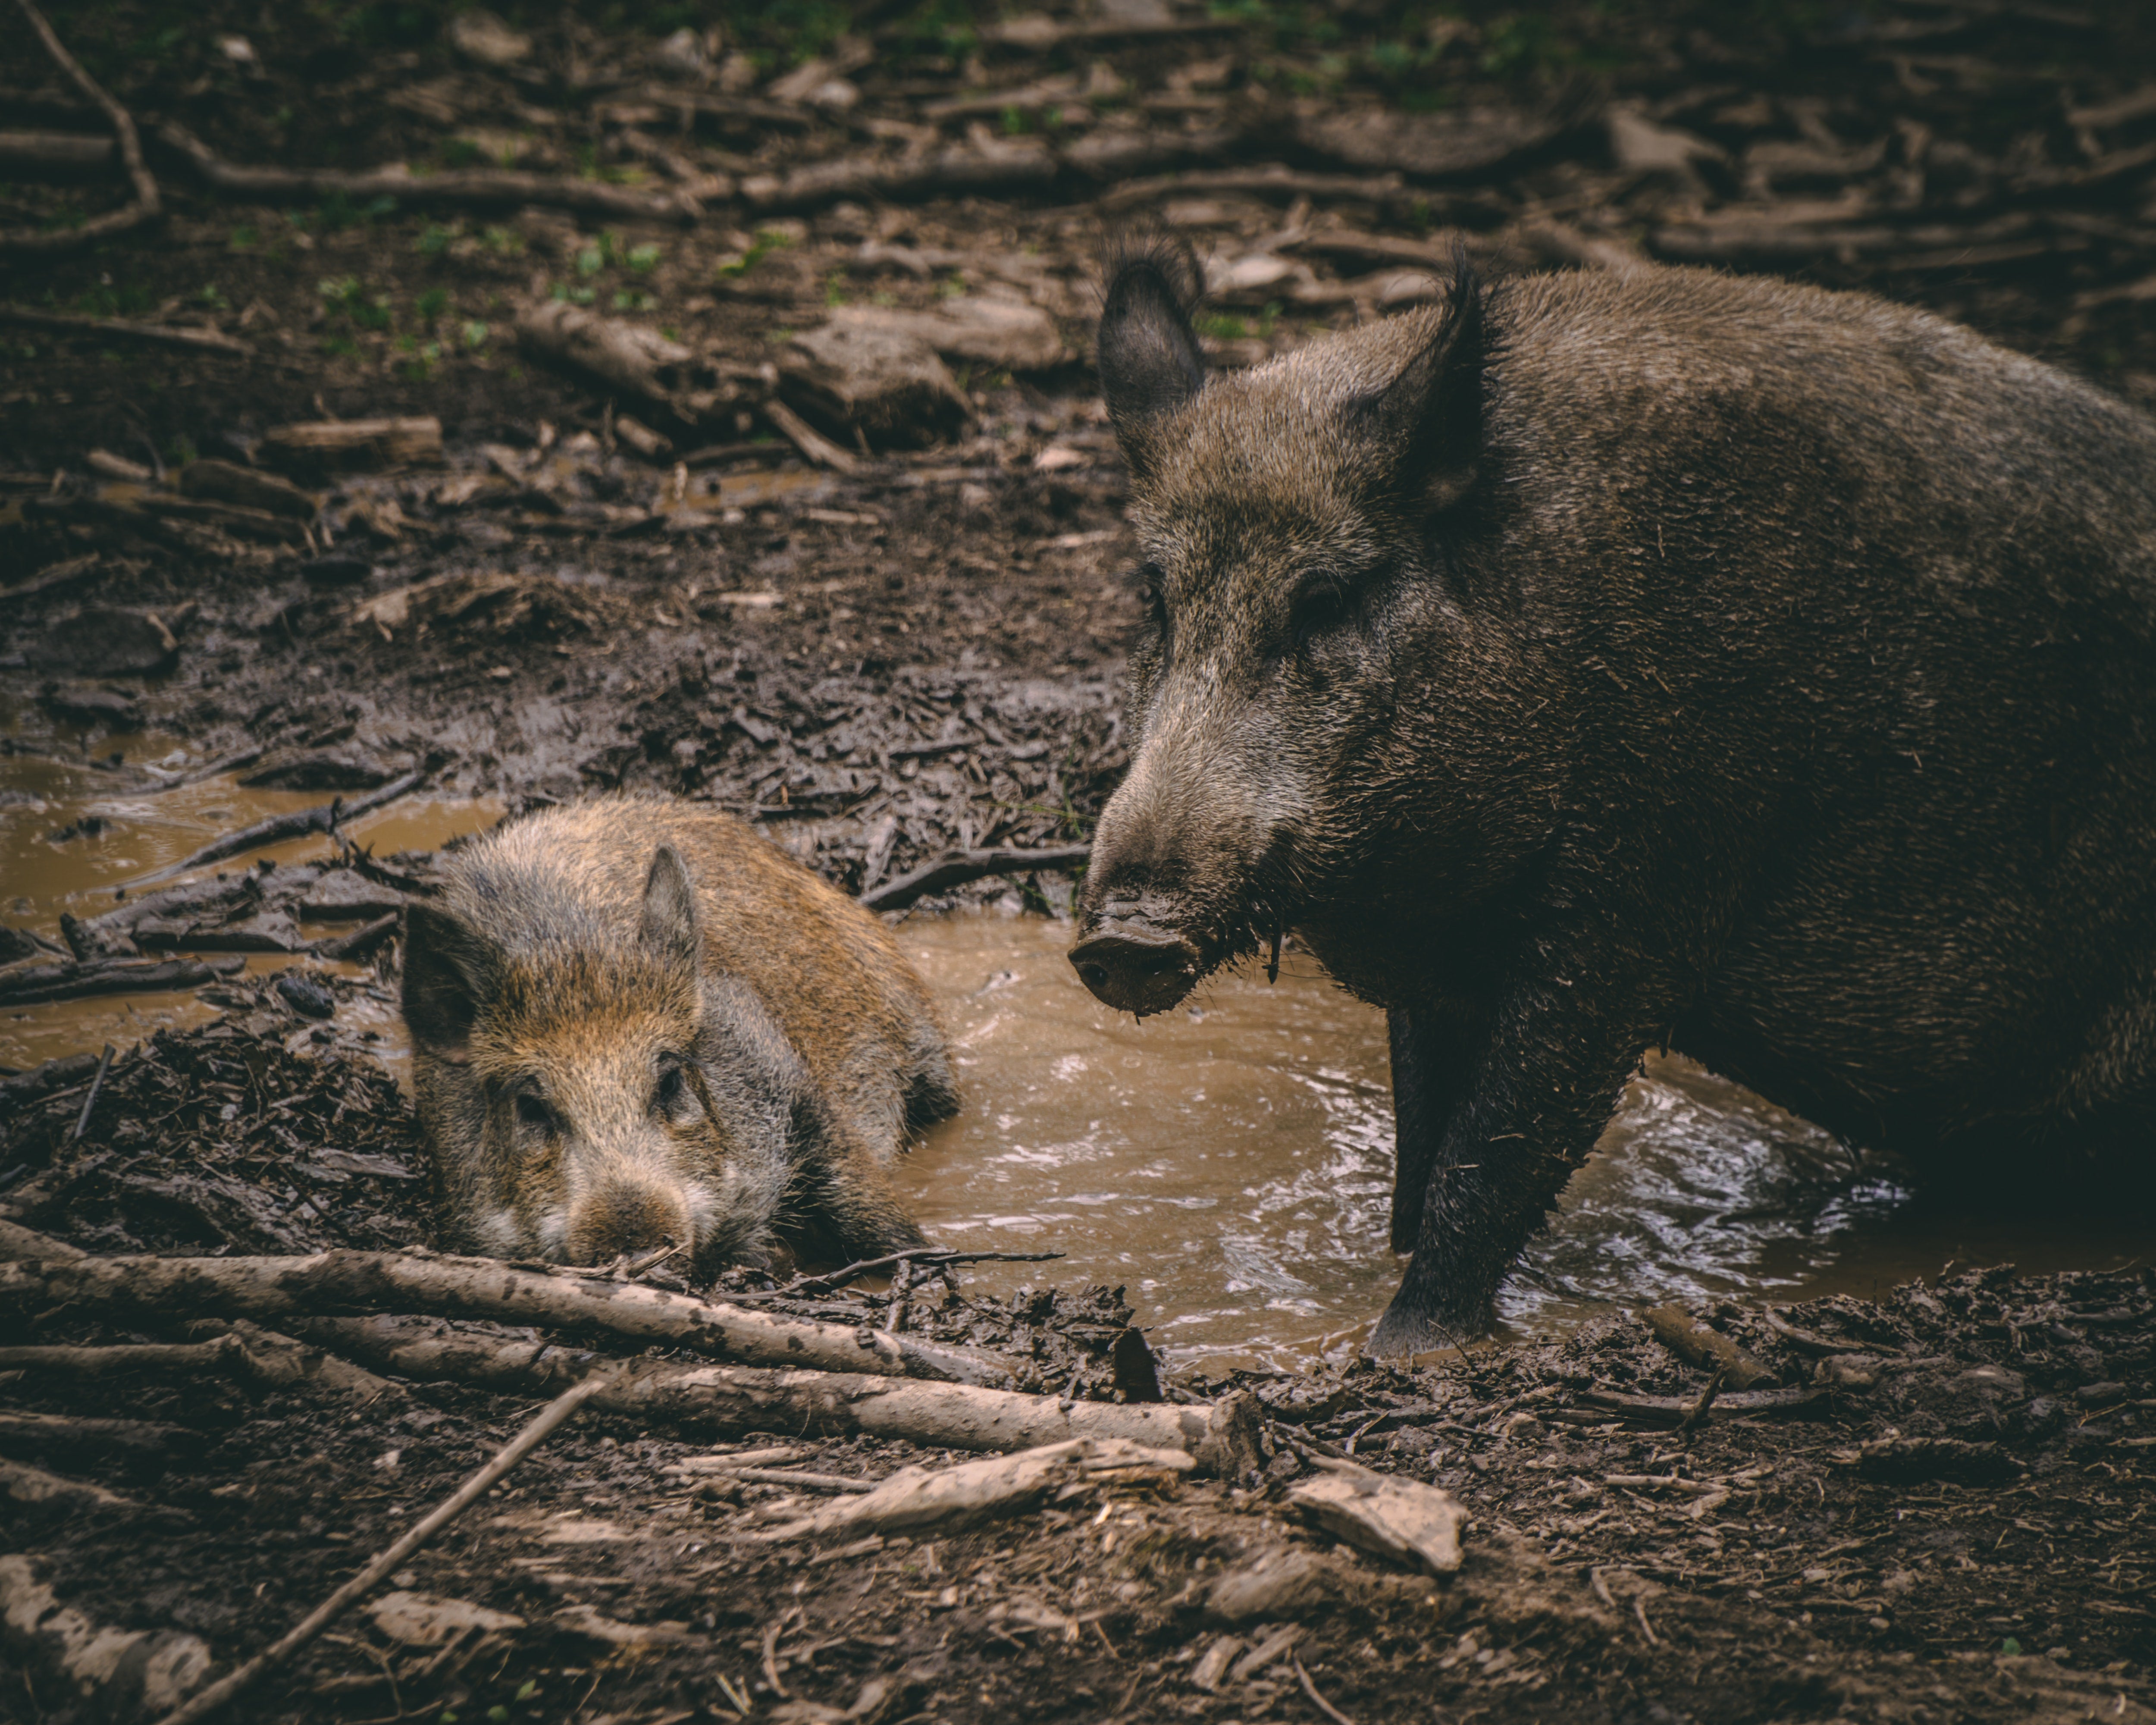 Why the Wild Pig Wanders - Nomadic Tendencies of Wild Pigs